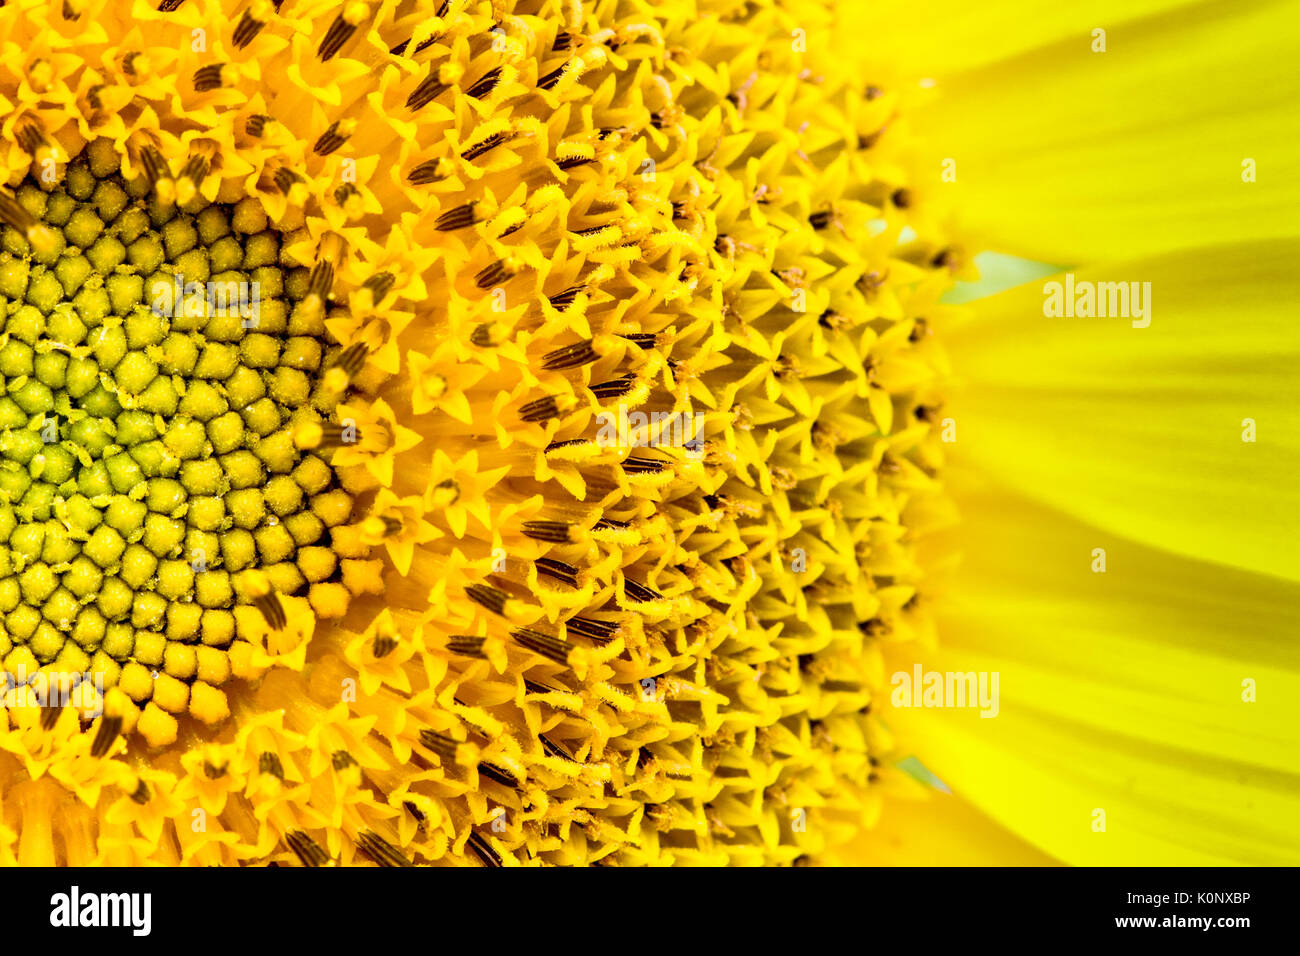 Frische Sonnenblumen close-up, in dem die Sonnenblume und den Ray und winzige Festplatte Blumen (oder röschen), die Diskette zu erstellen. Stockfoto